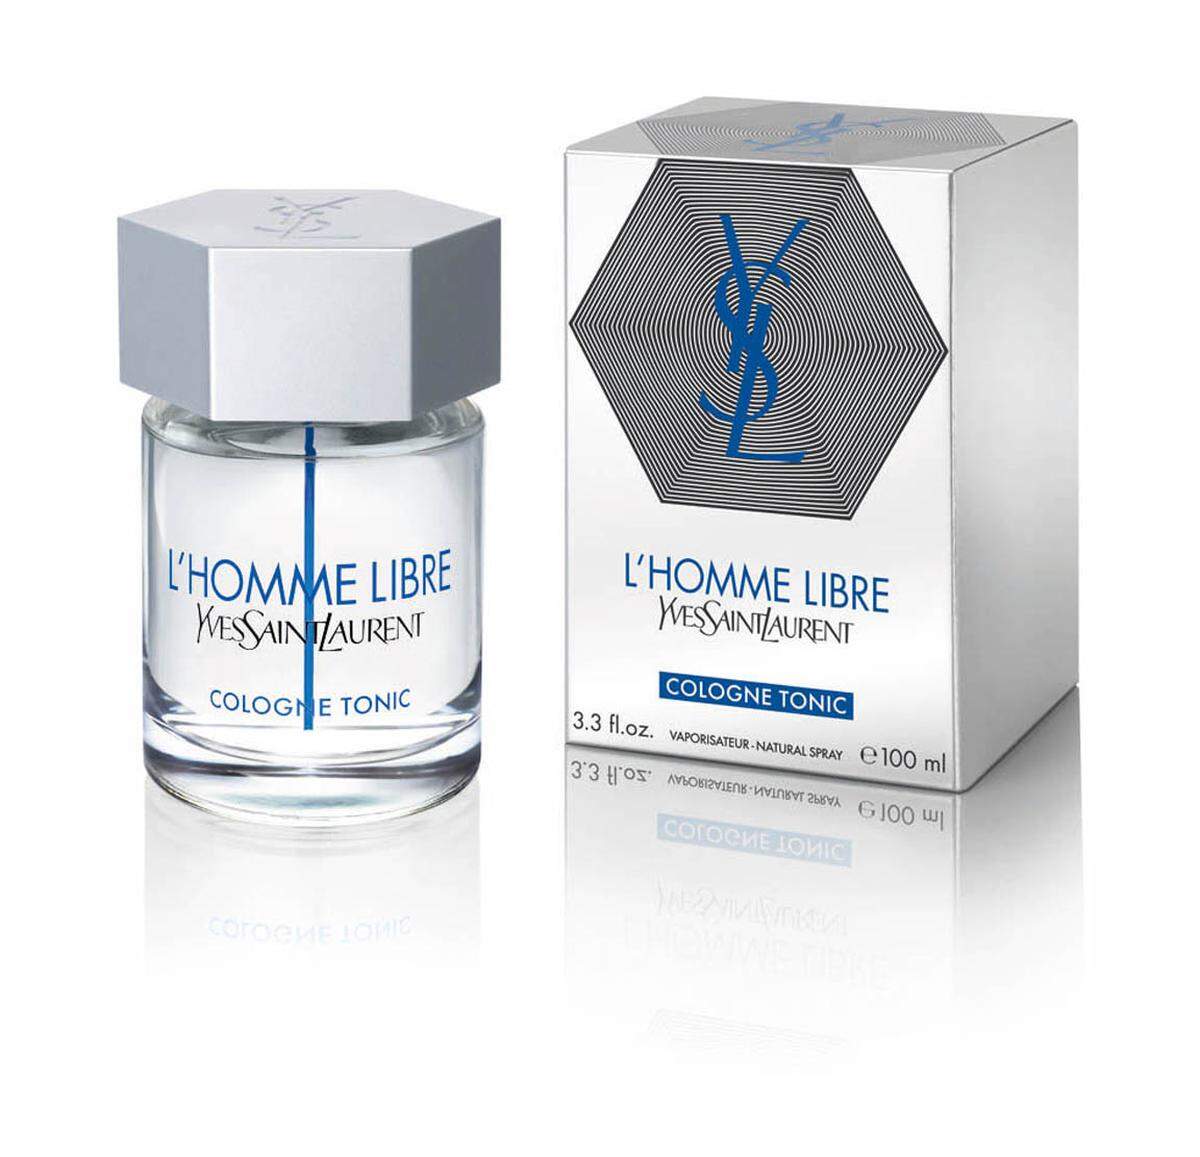 L’Homme Libre Cologne Tonic von Yves Saint Laurent duftet holzig und aromatisch. 60ml Spray für 53 Euro.